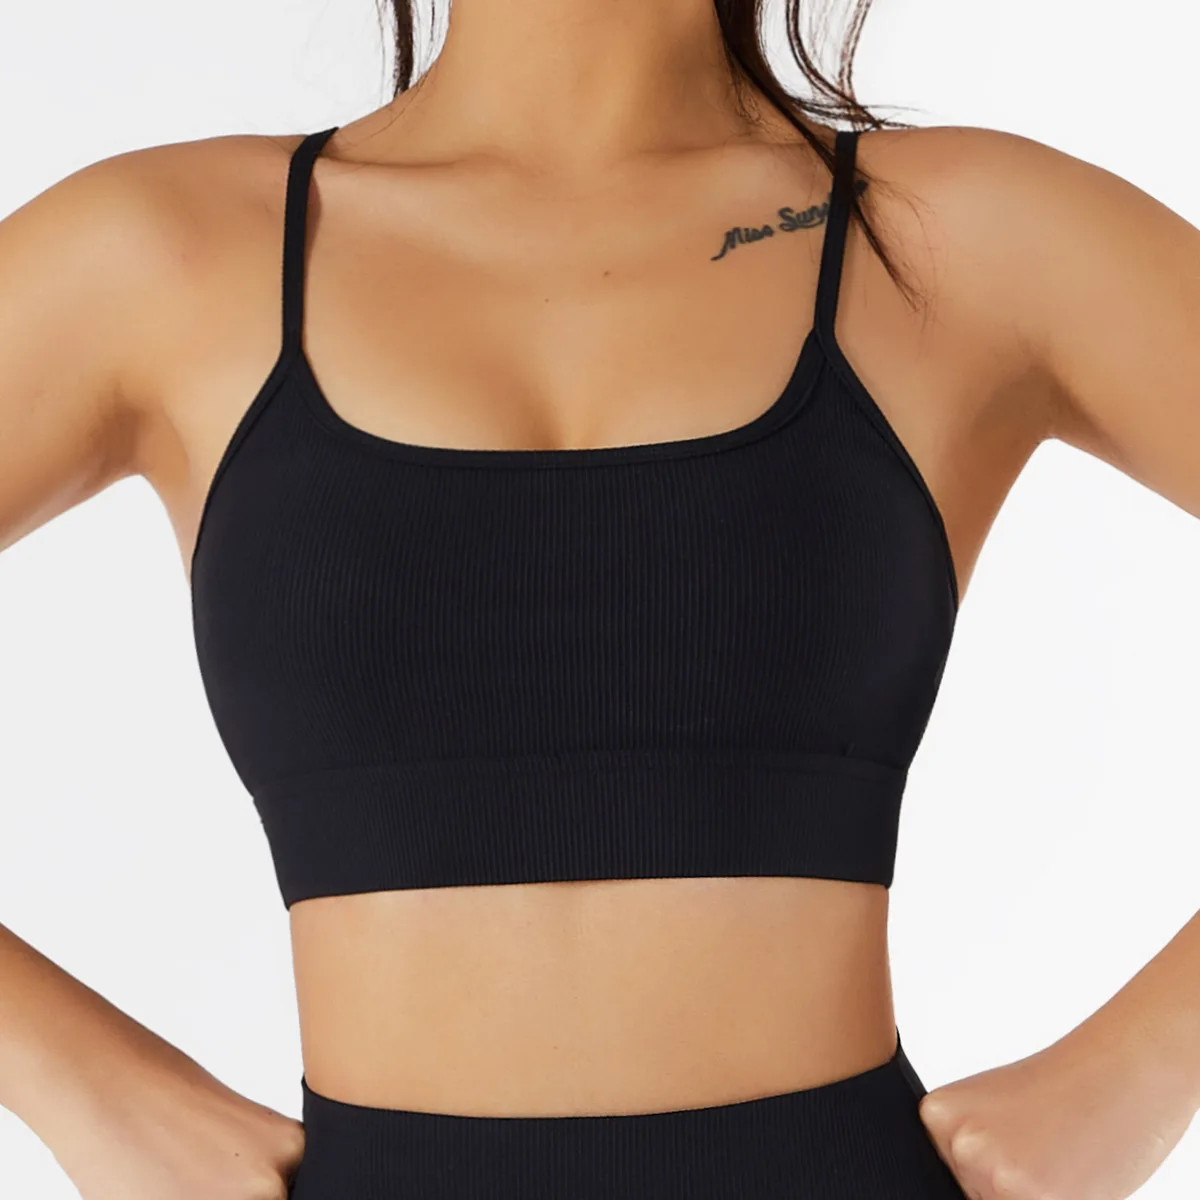 Wholesale Sportswear Sexy Yoga Top Backless Seamless Bra Gym Fitness Sports Bra For Women